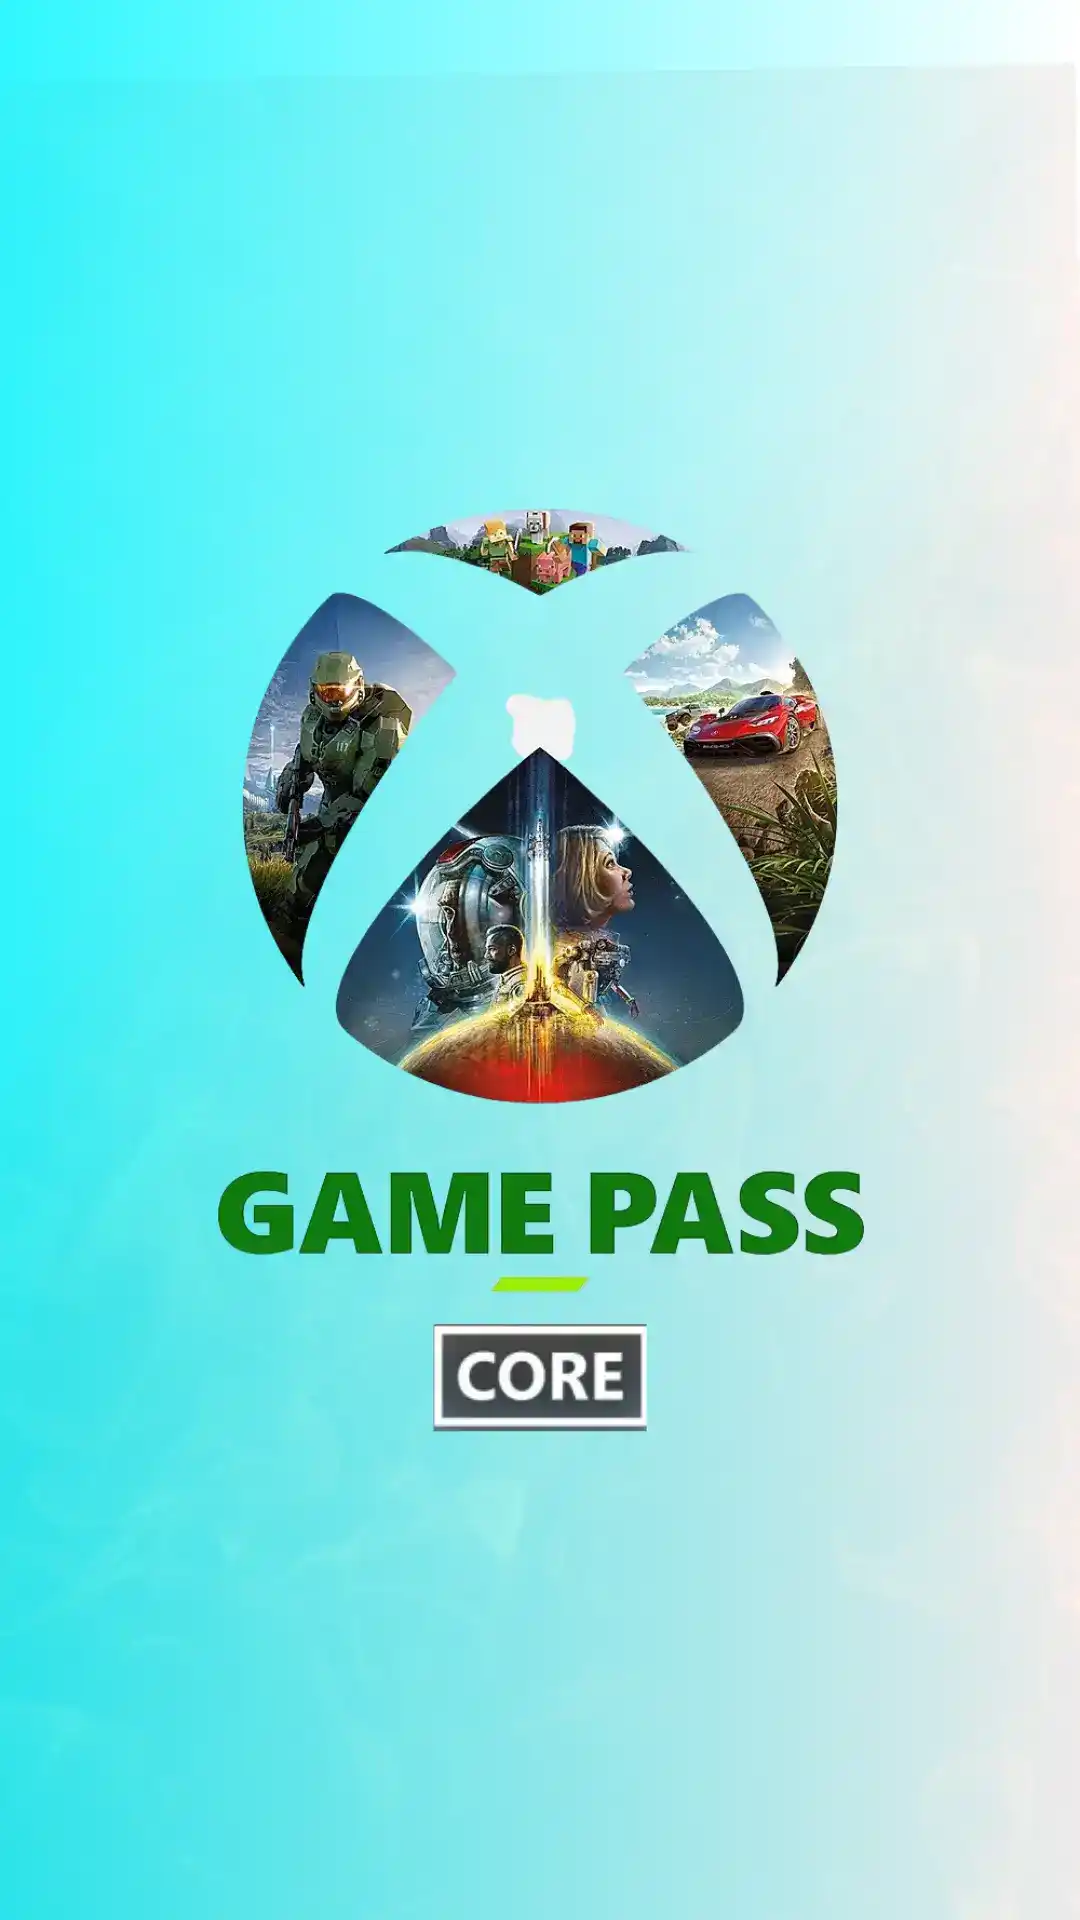 Os Melhores Jogos de FPS do Xbox Game Pass na Atualidade